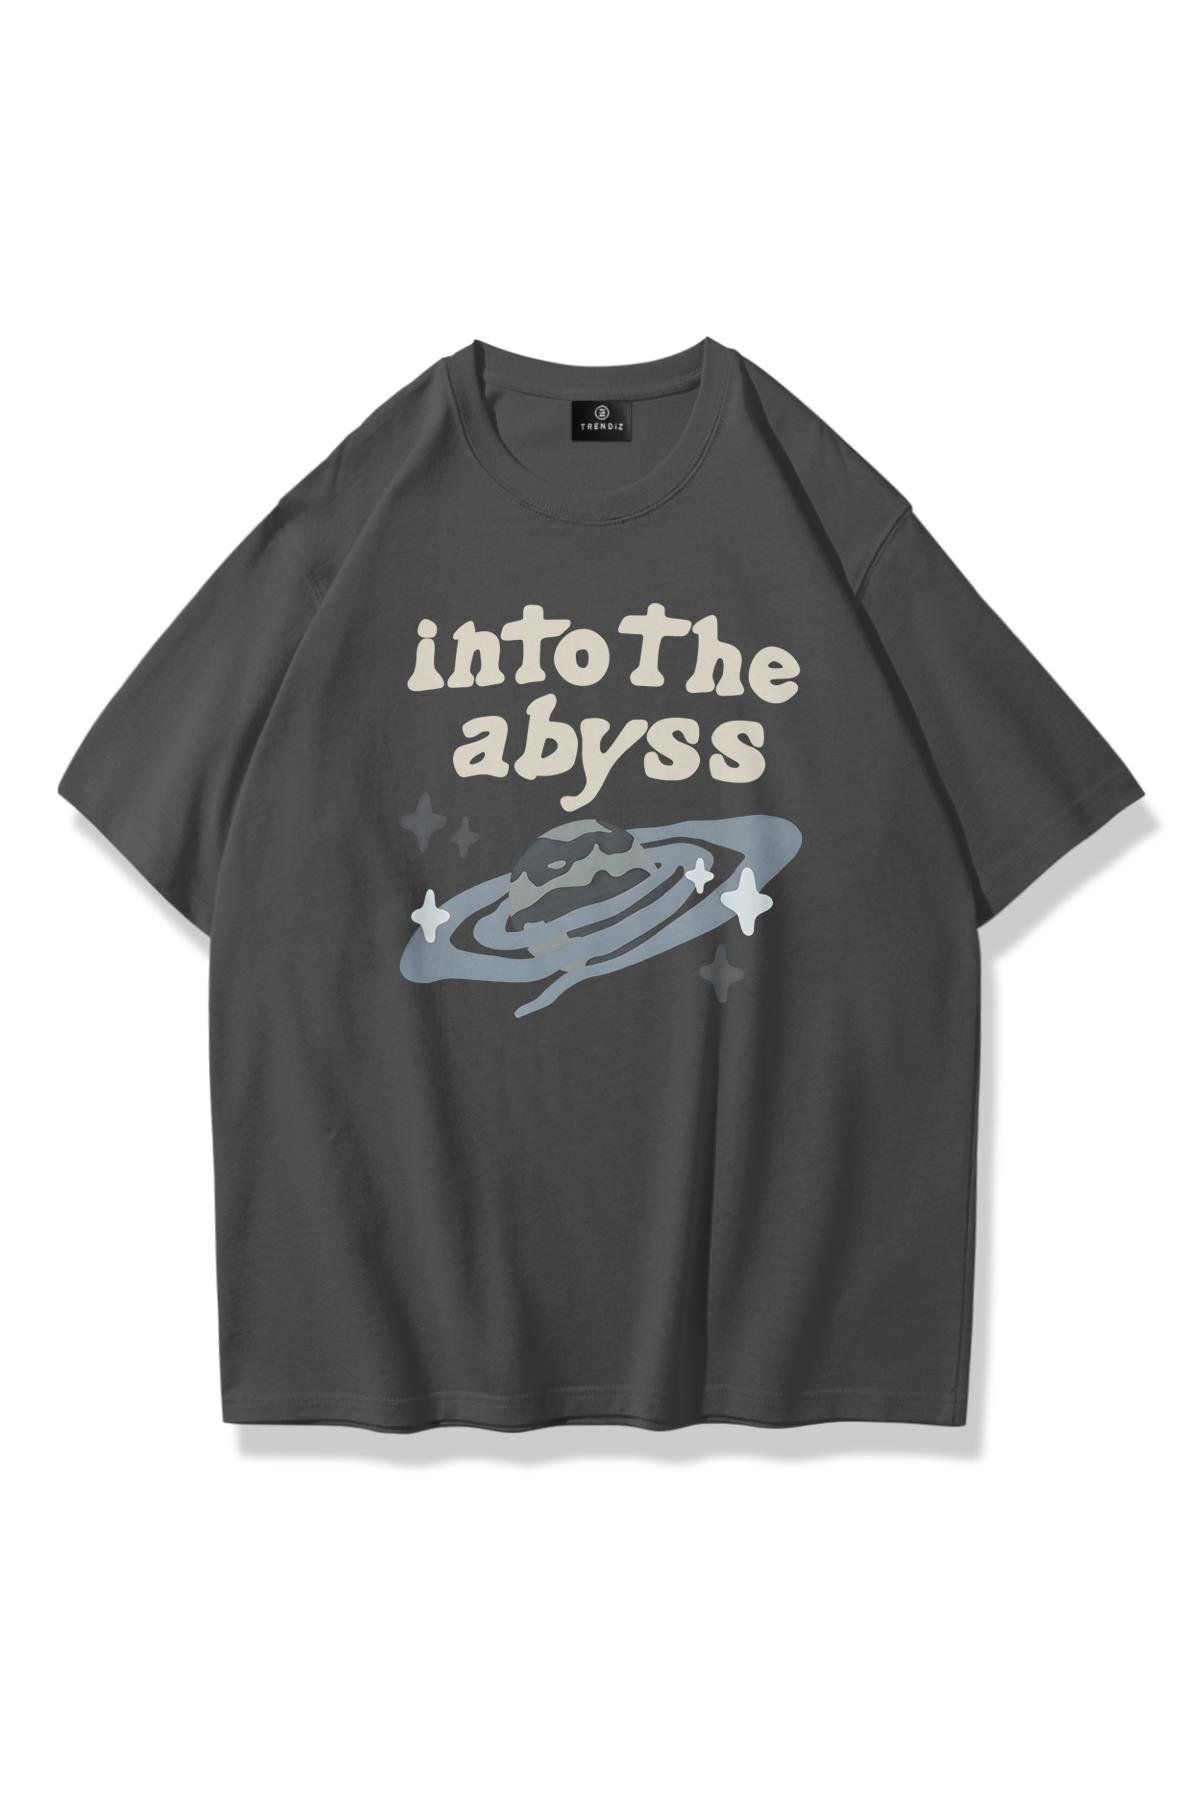 Trendiz Unisex Into The Abyss Tshirt Antrasit